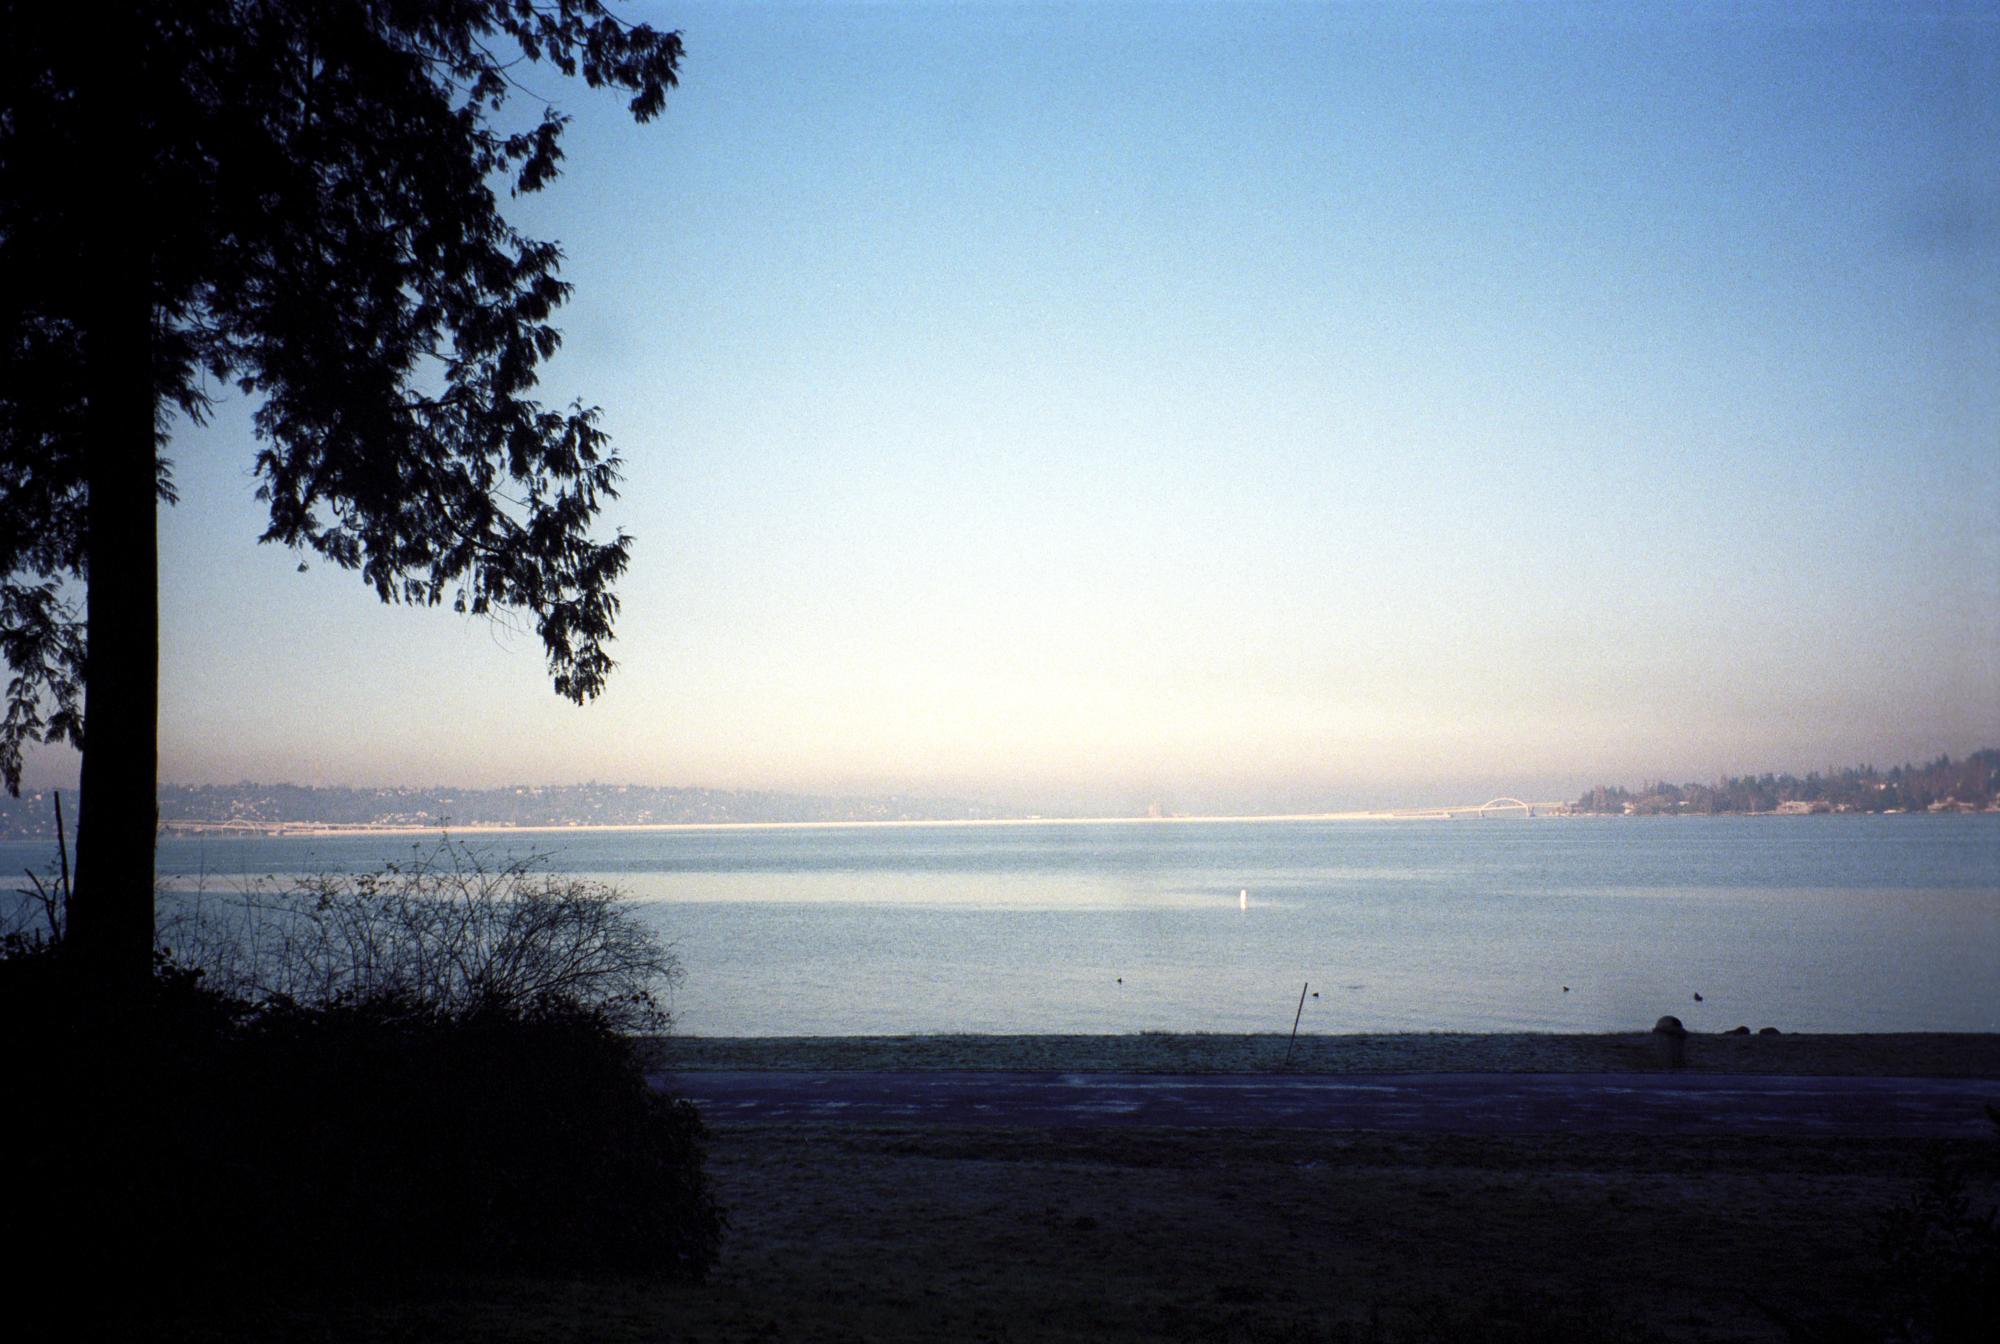 Seattle (1995) - Lake Washington